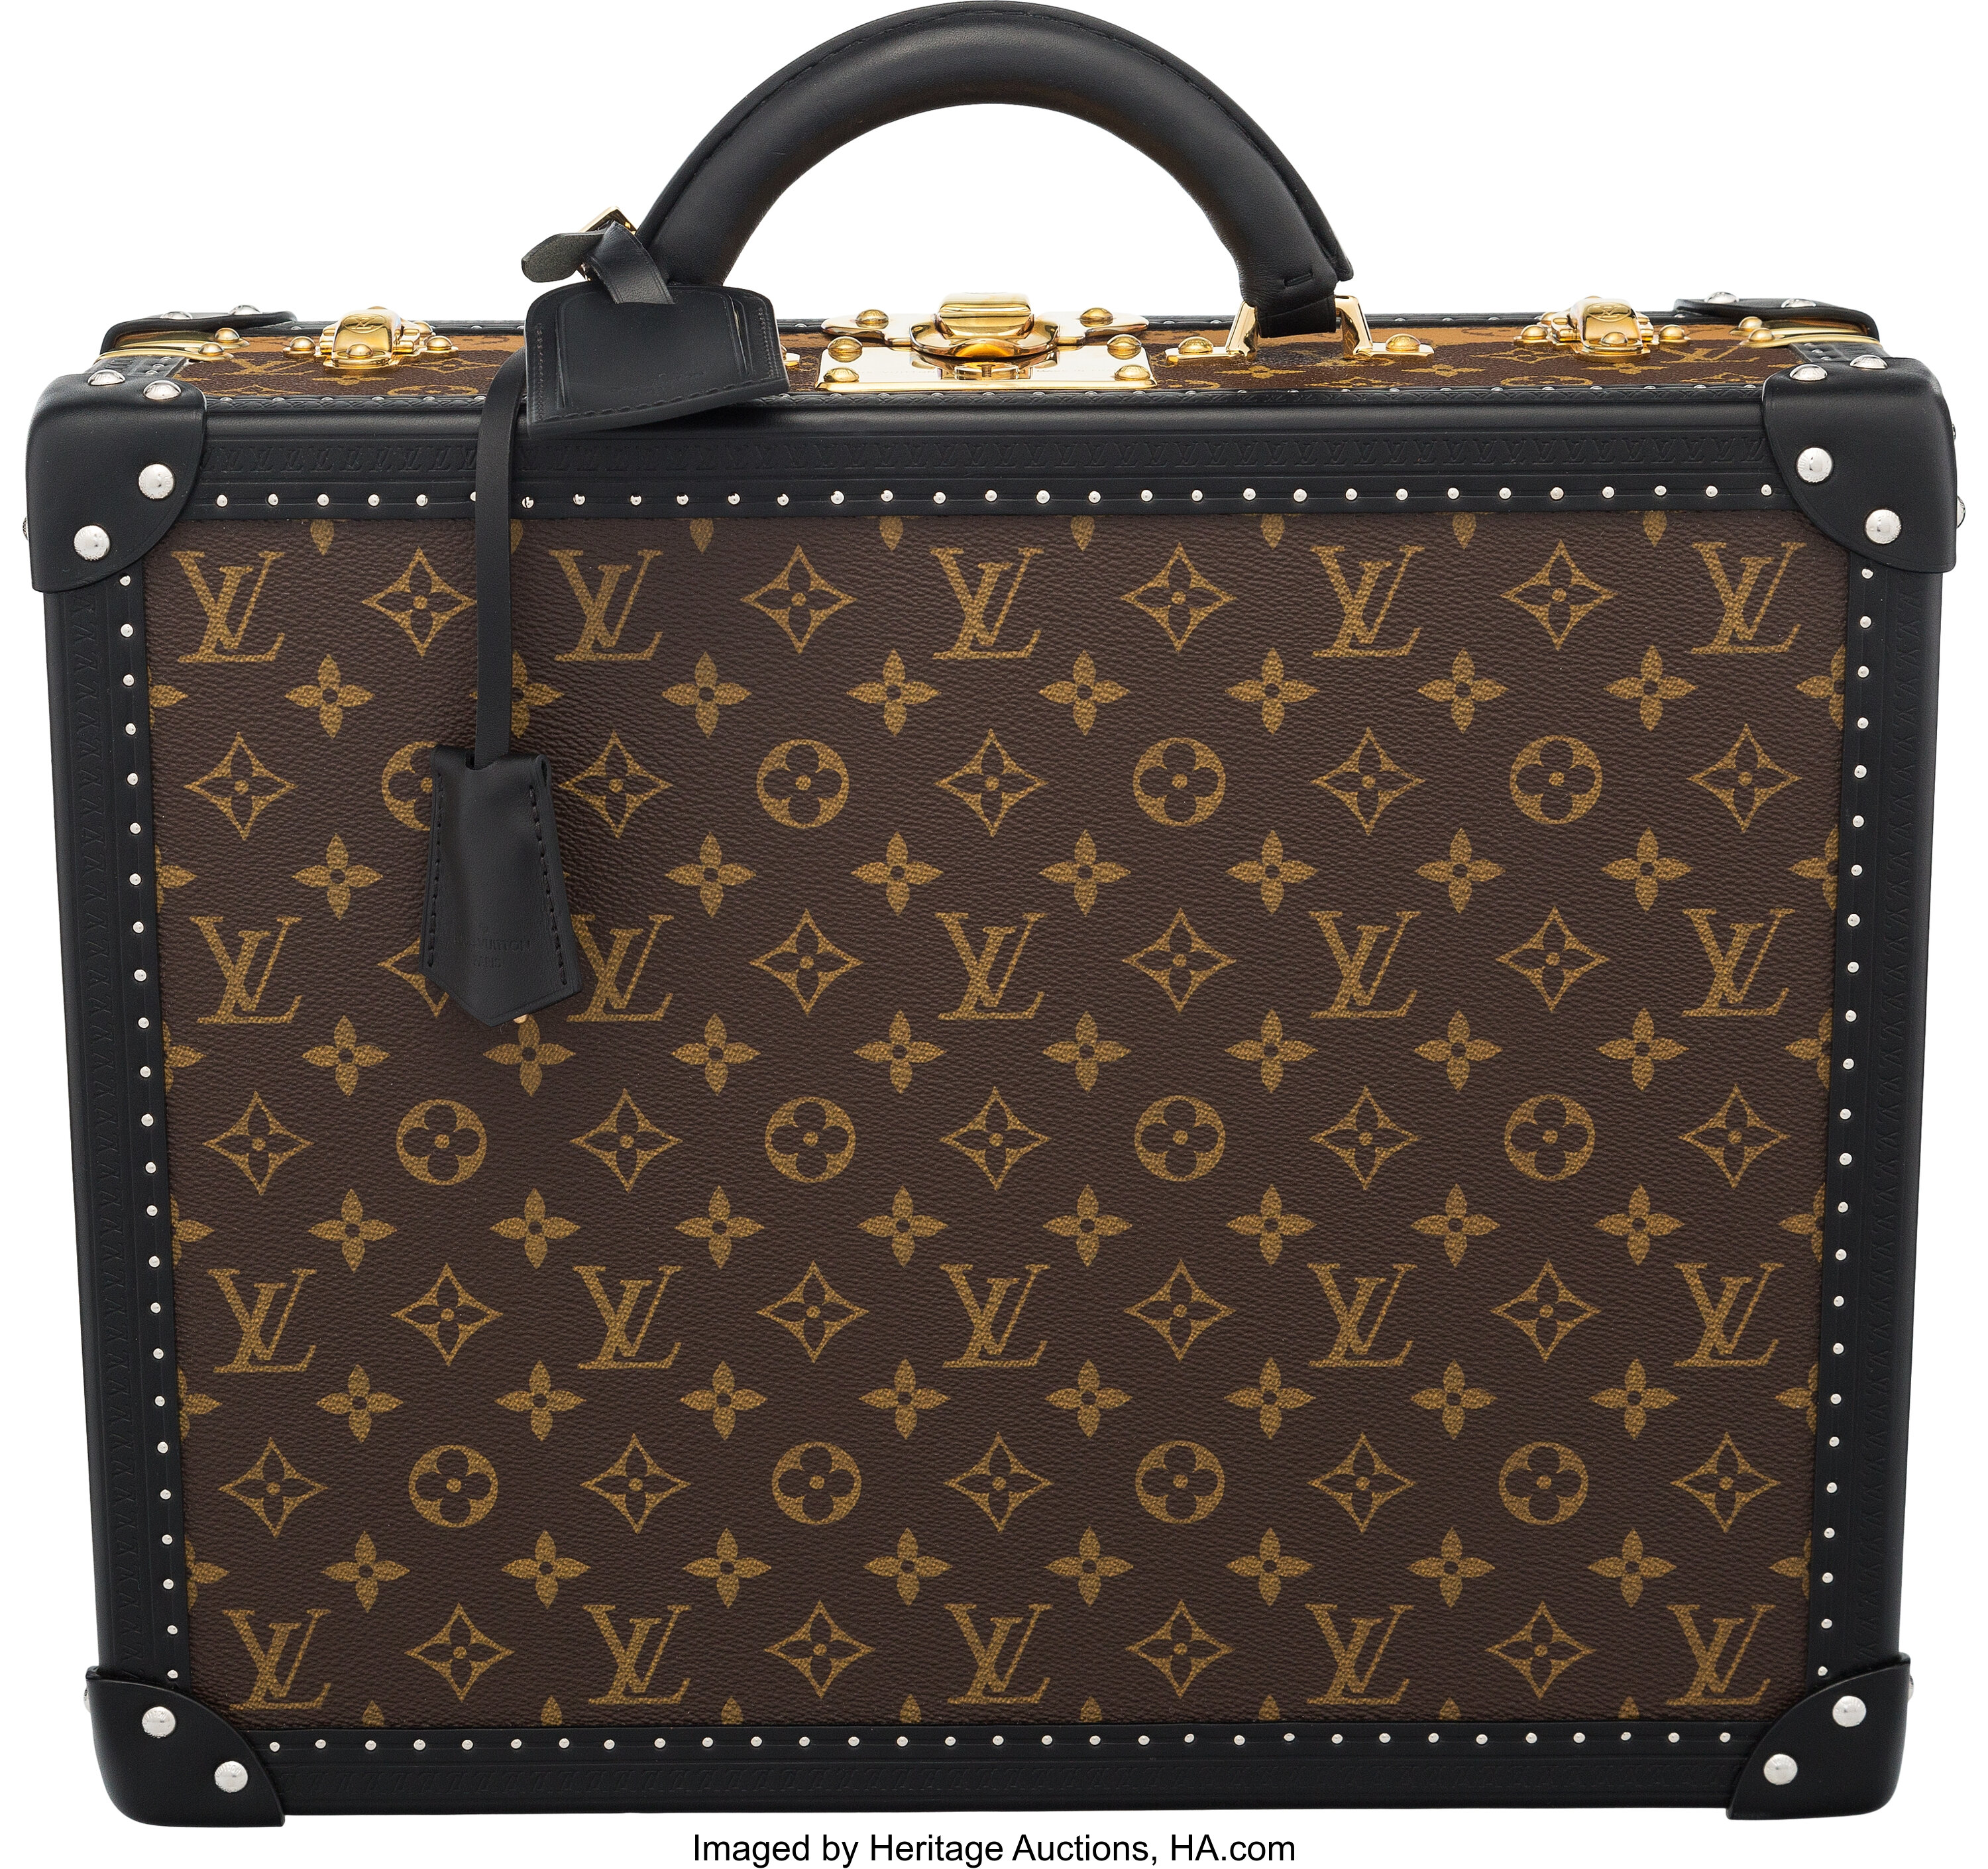 Sold at Auction: Louis Vuitton, Louis Vuitton Monogram Hard Case